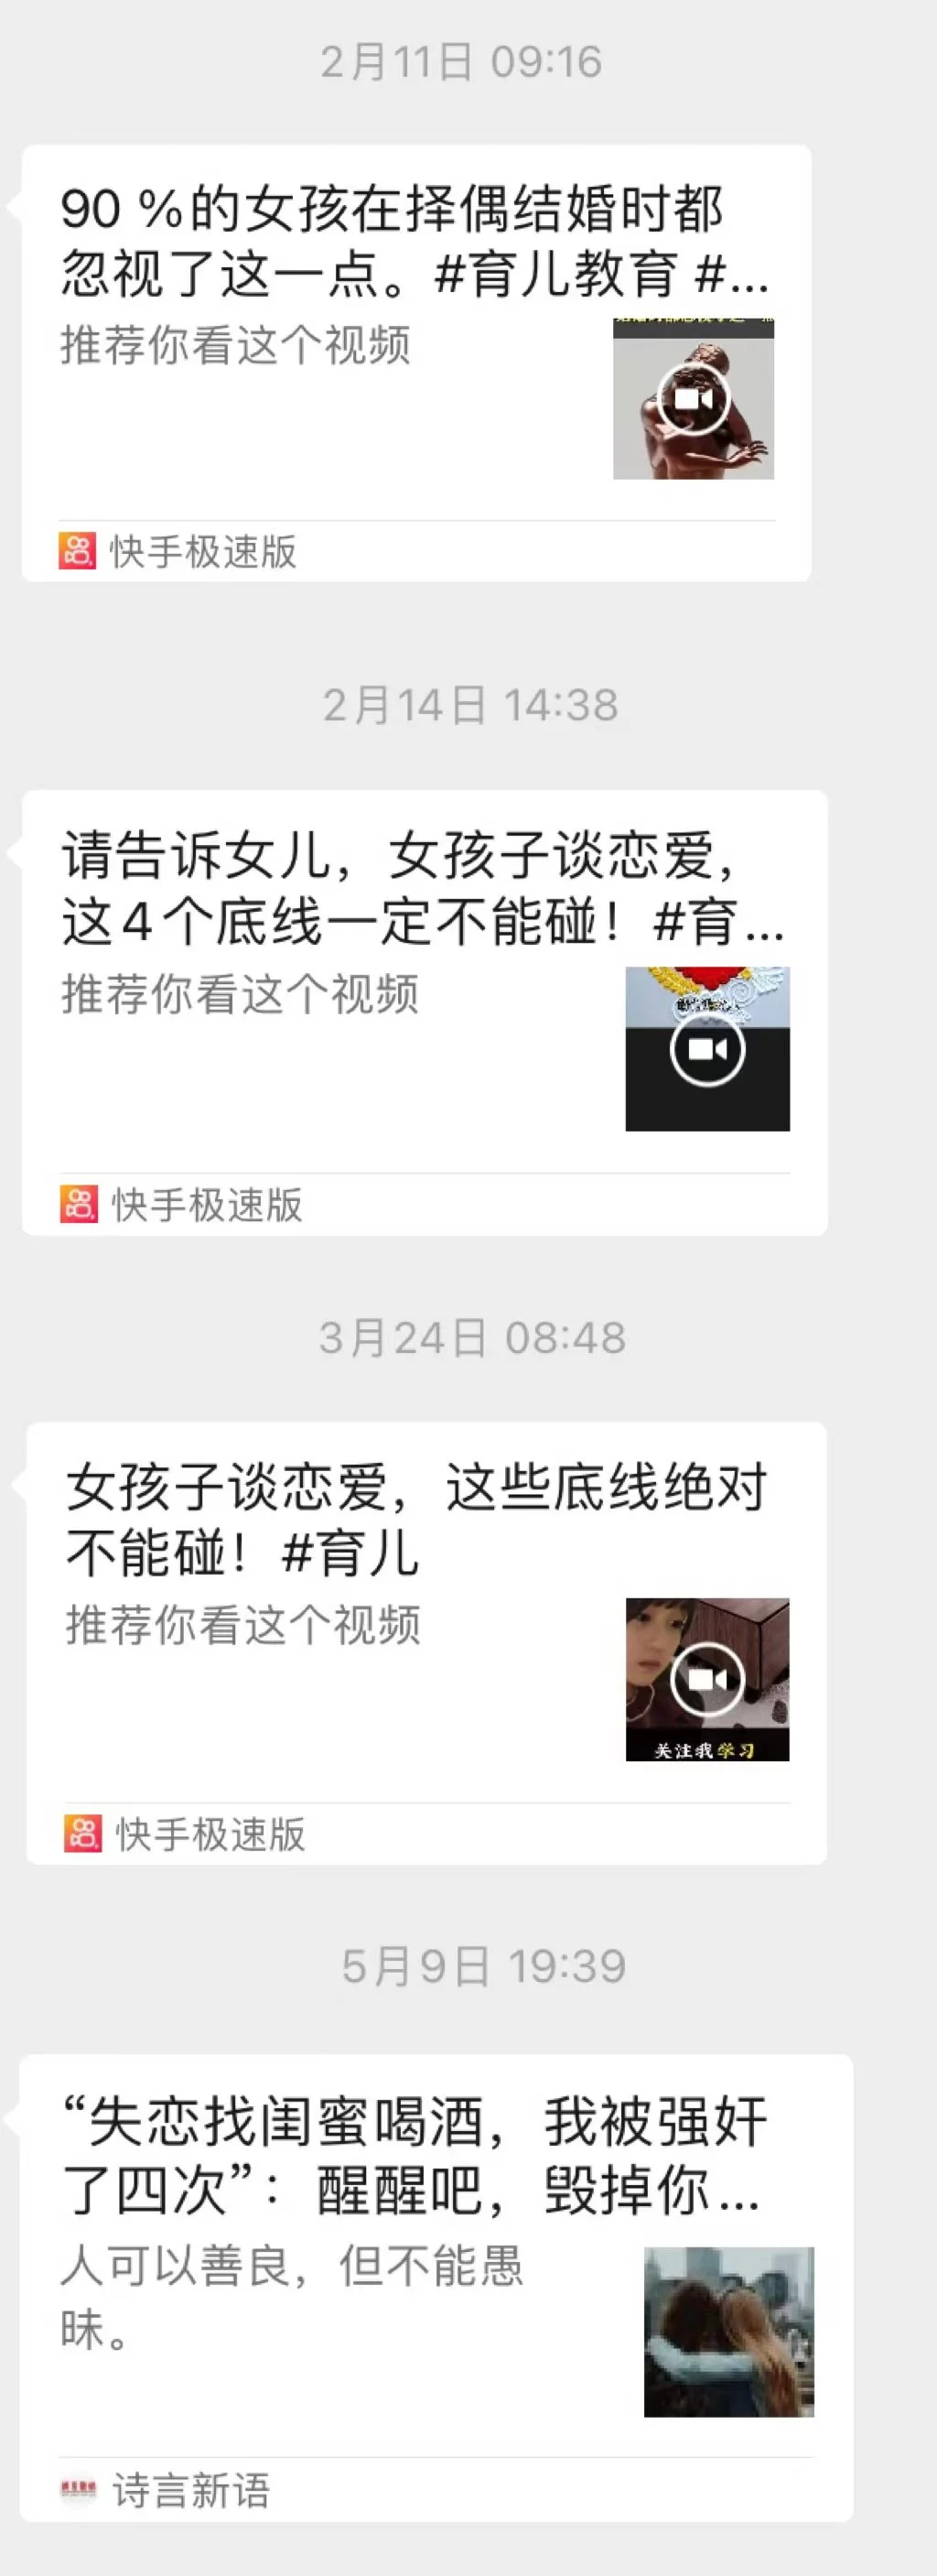 刘彤的妈妈发给她的“教育”视频 受访者供图